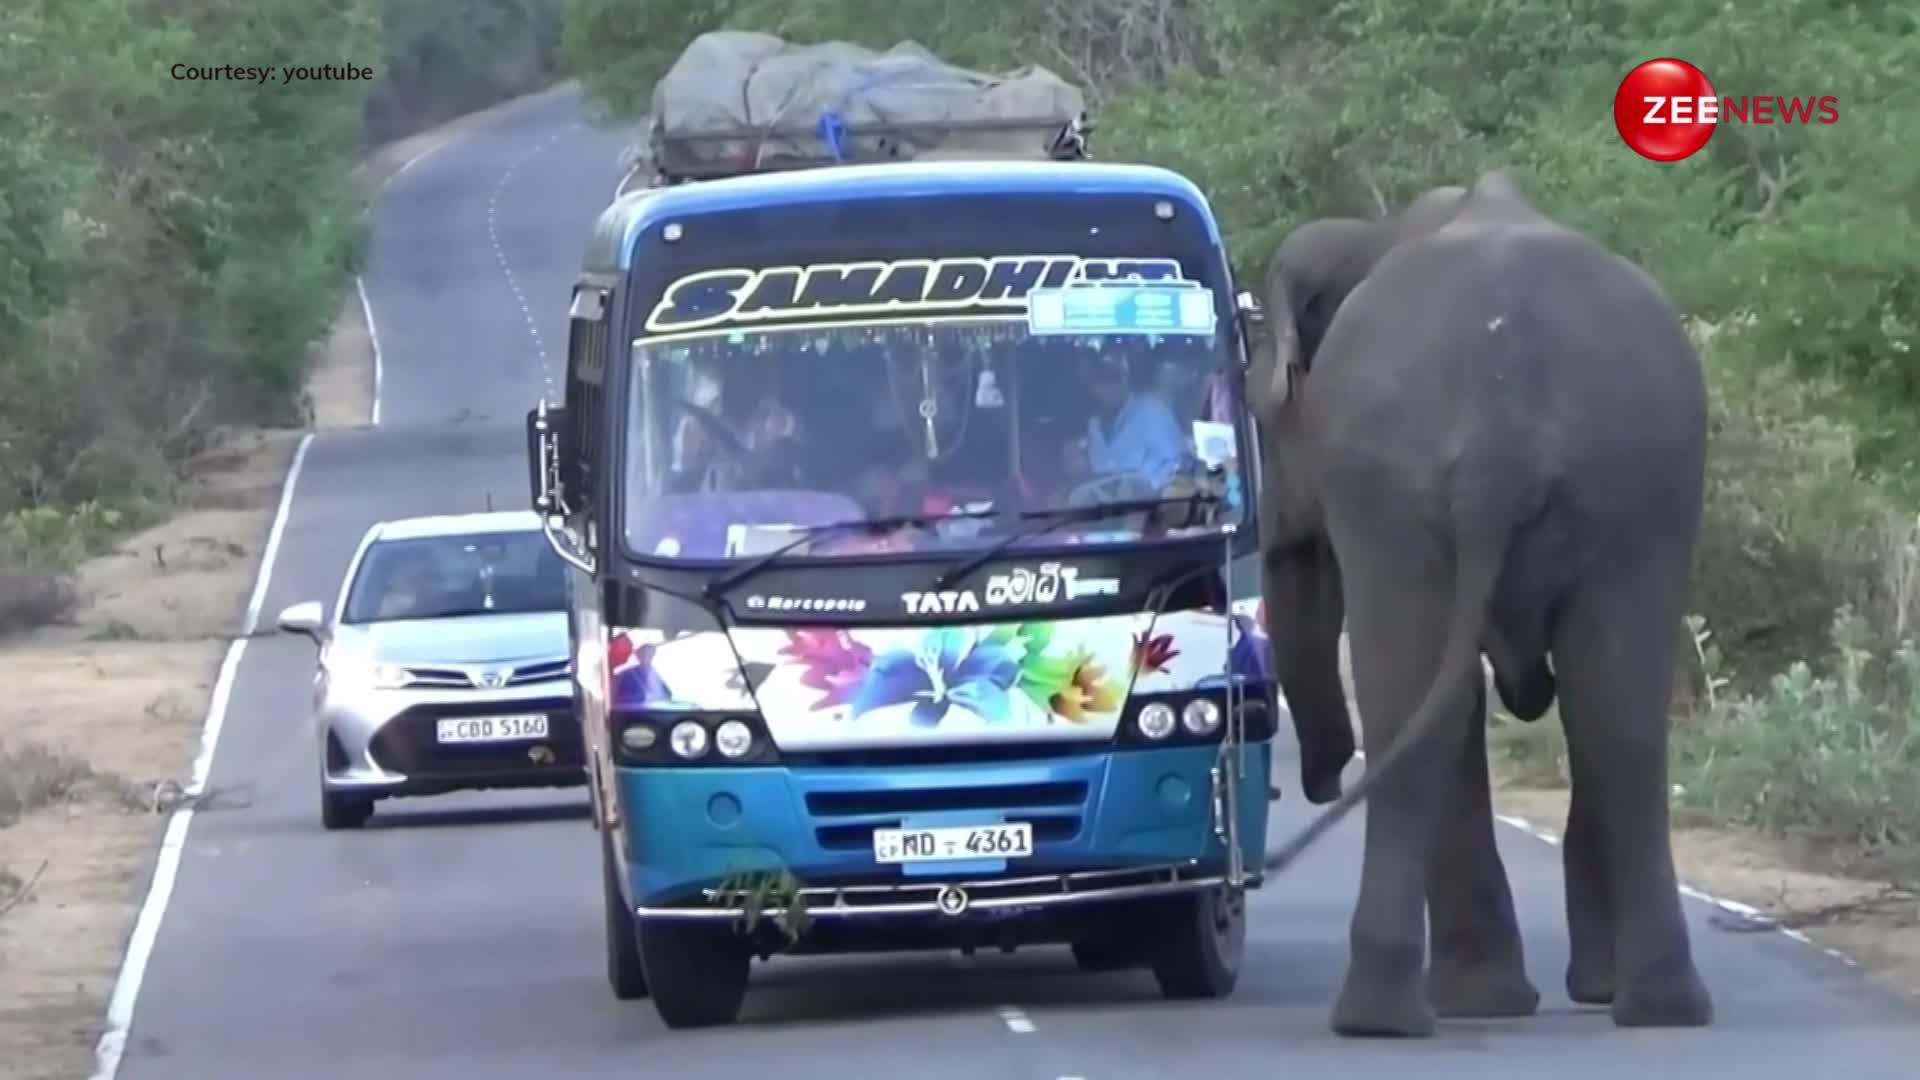 गुंडे की तरह चलती हुई बस में से खुराफाती जंगली हाथी ने निकाल लिया खाने का सामान, इतना सब देखने के बाद सहम गए लोग